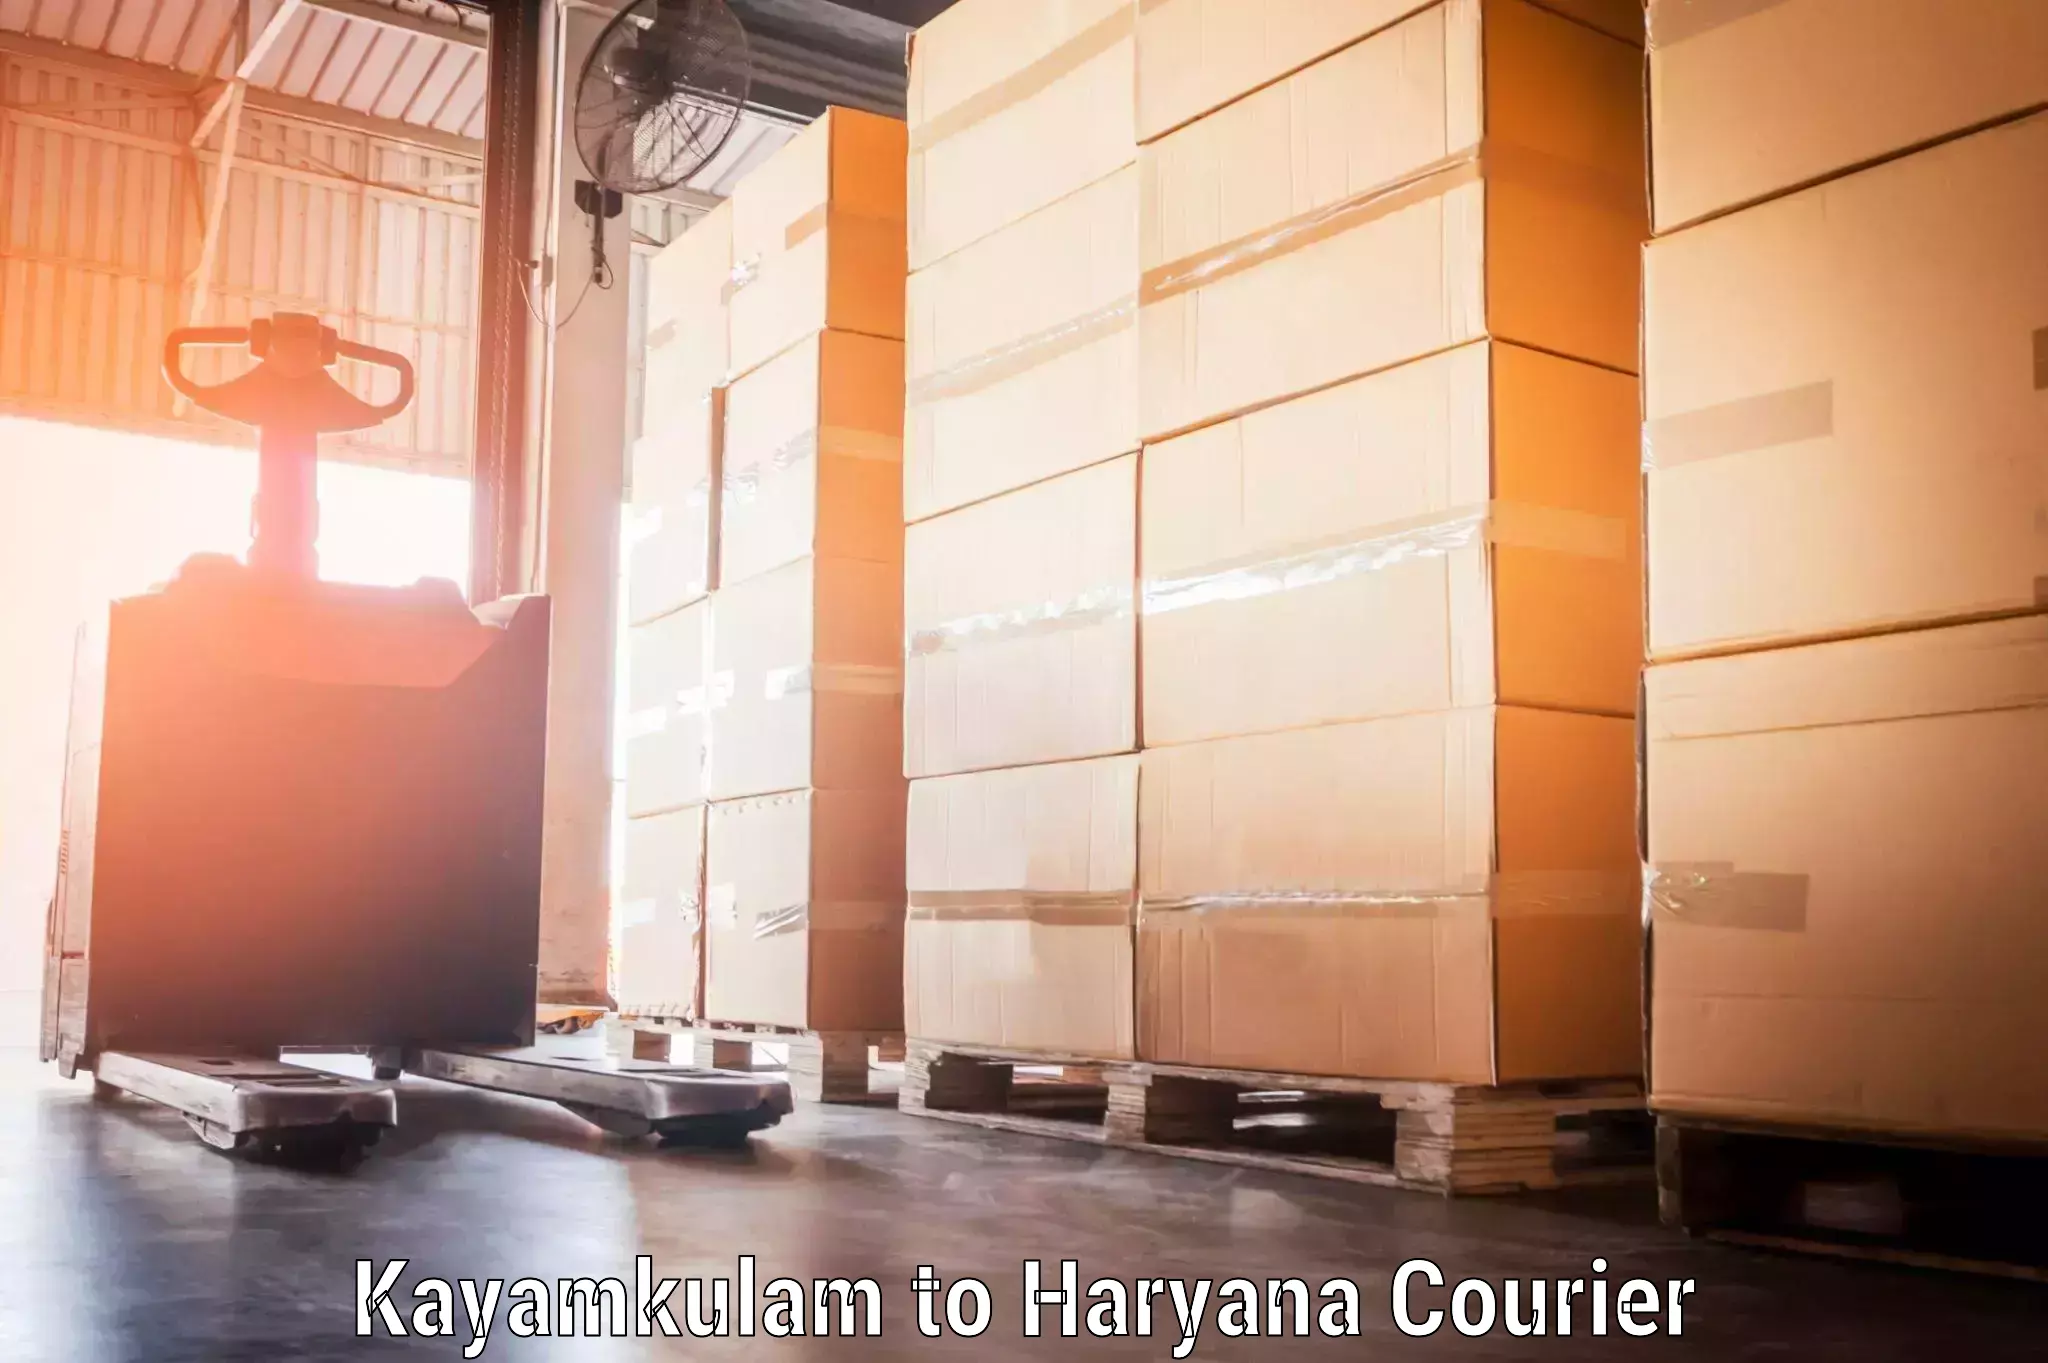 Doorstep luggage collection Kayamkulam to Haryana